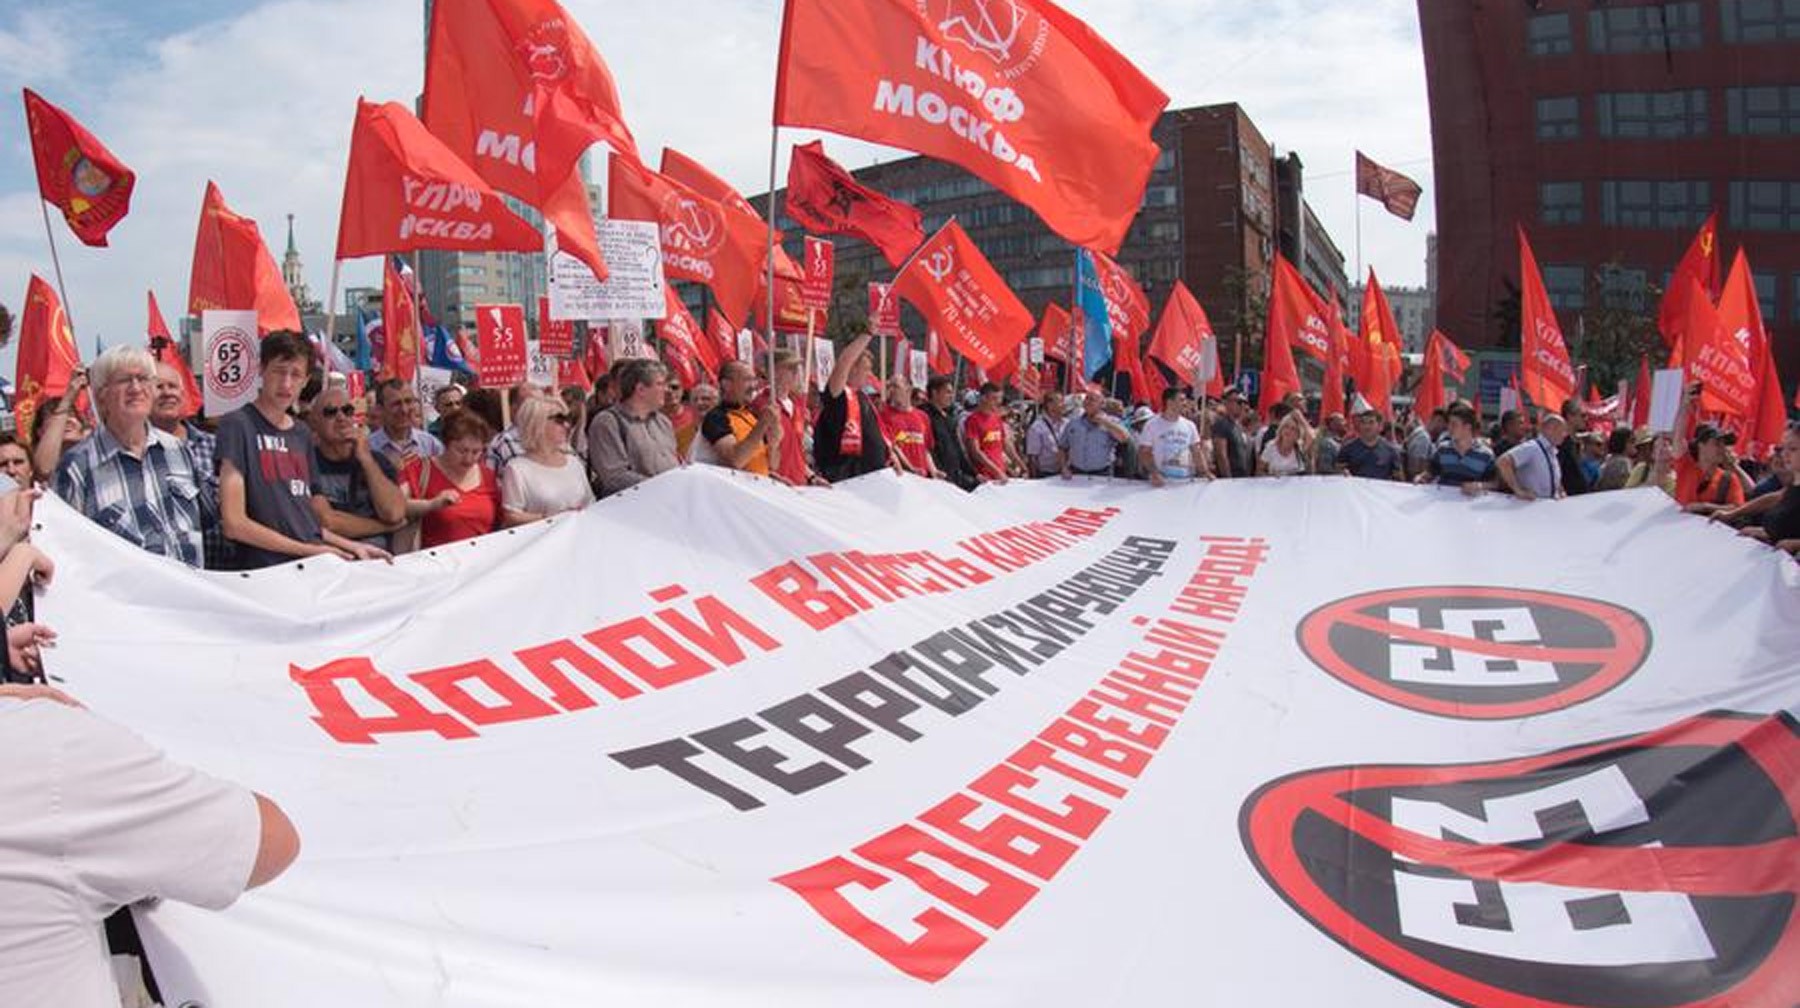 Dailystorm - КПРФ вступила в клинч со «Справедливой Россией» из-за пенсионной реформы